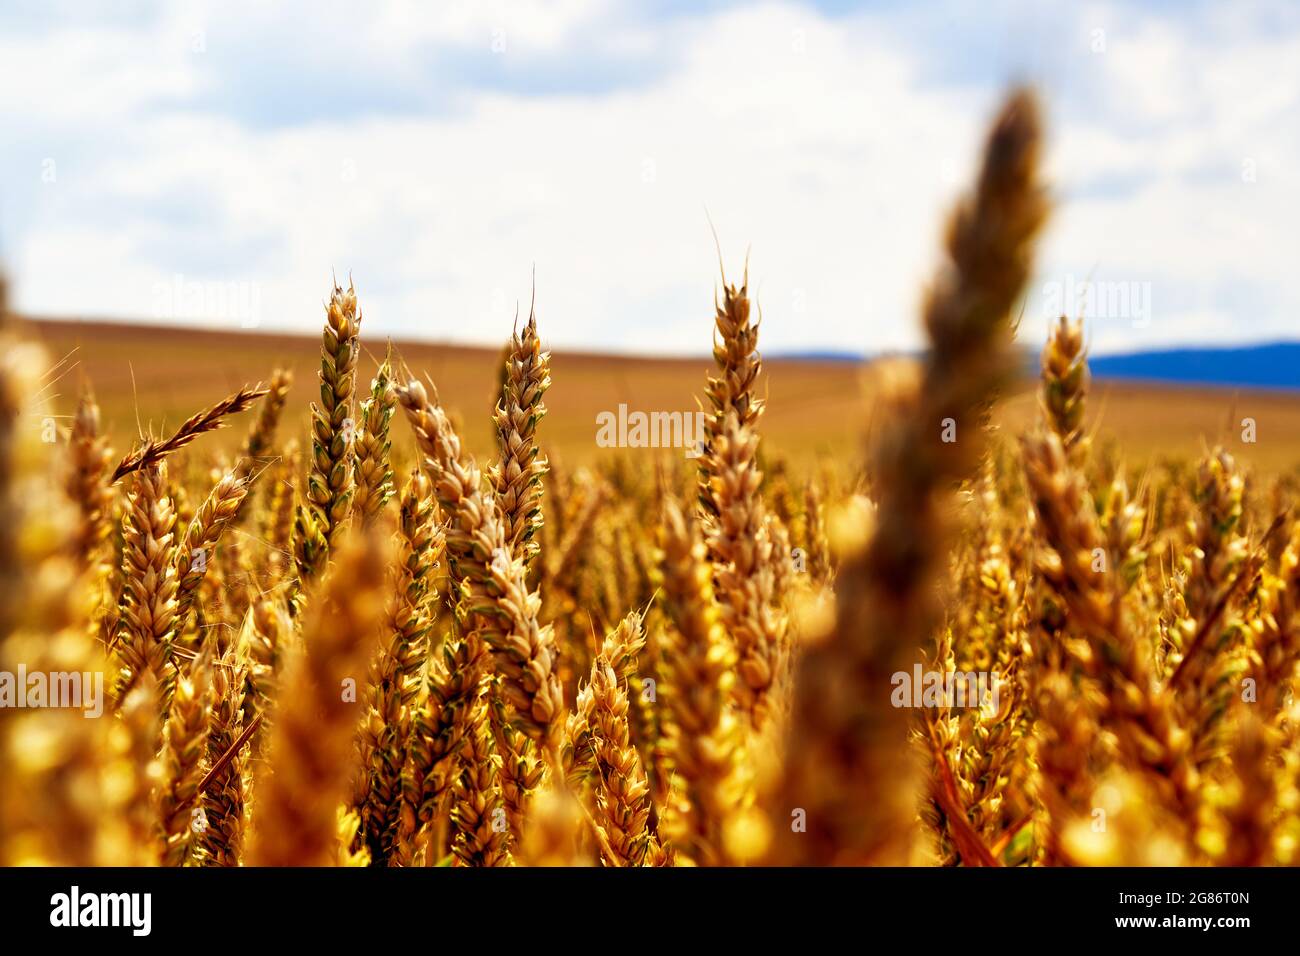 Orejas de trigo de oro recortadas frente a un paisaje deliberadamente borroso con un campo de trigo y un cielo brillante en el fondo, selecta profundidad de campo Foto de stock